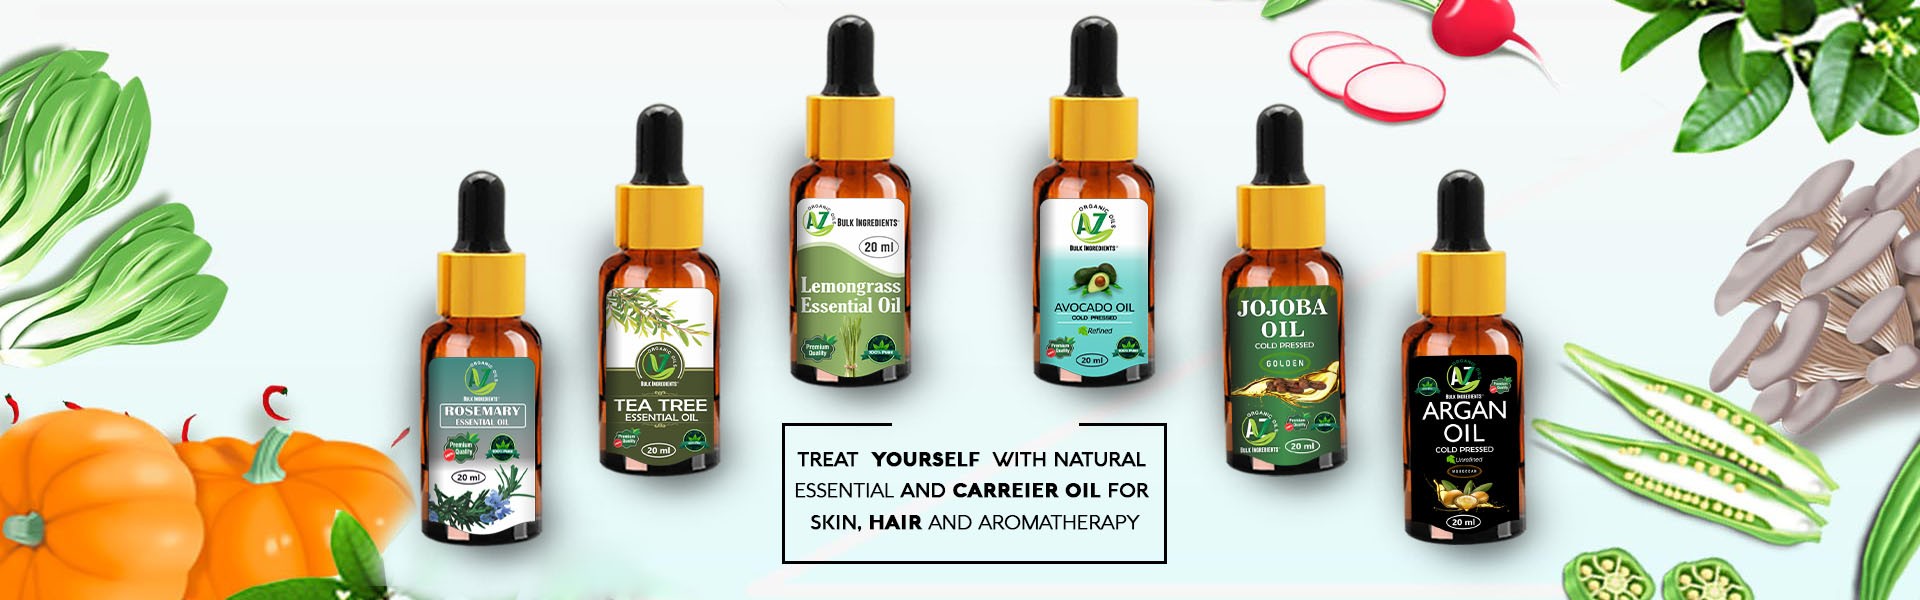 Home - AZ Organic Oils 100% Natural Essential & carrier Oils